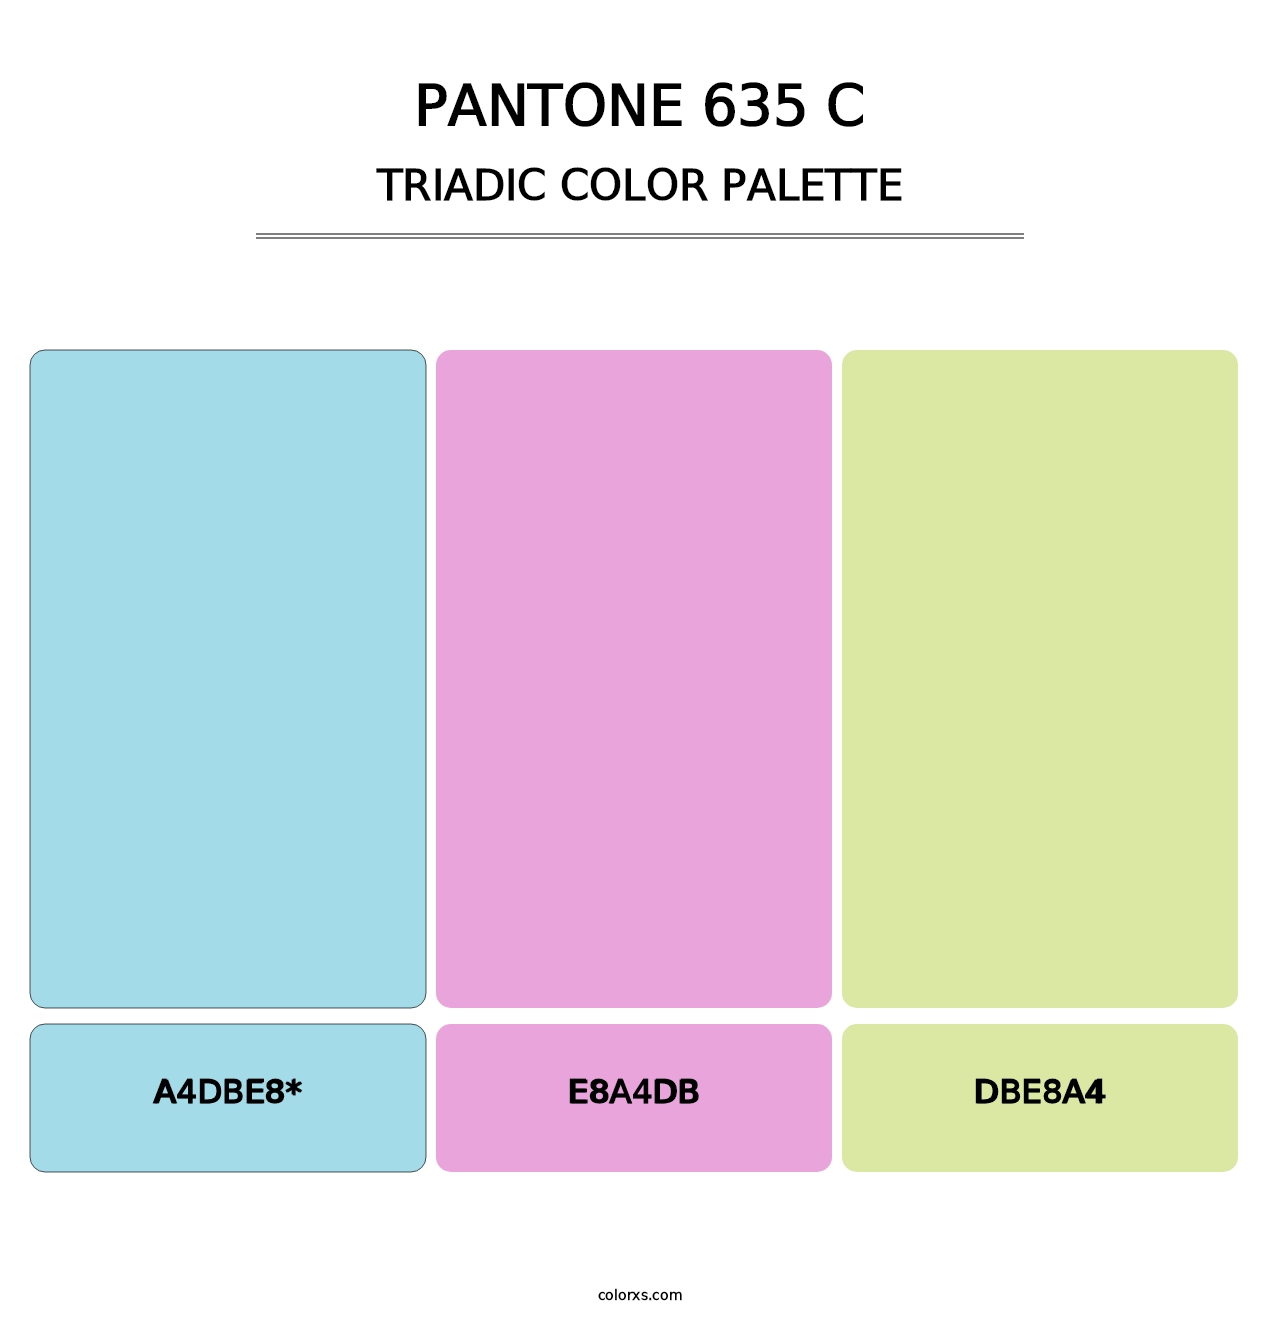 PANTONE 635 C - Triadic Color Palette